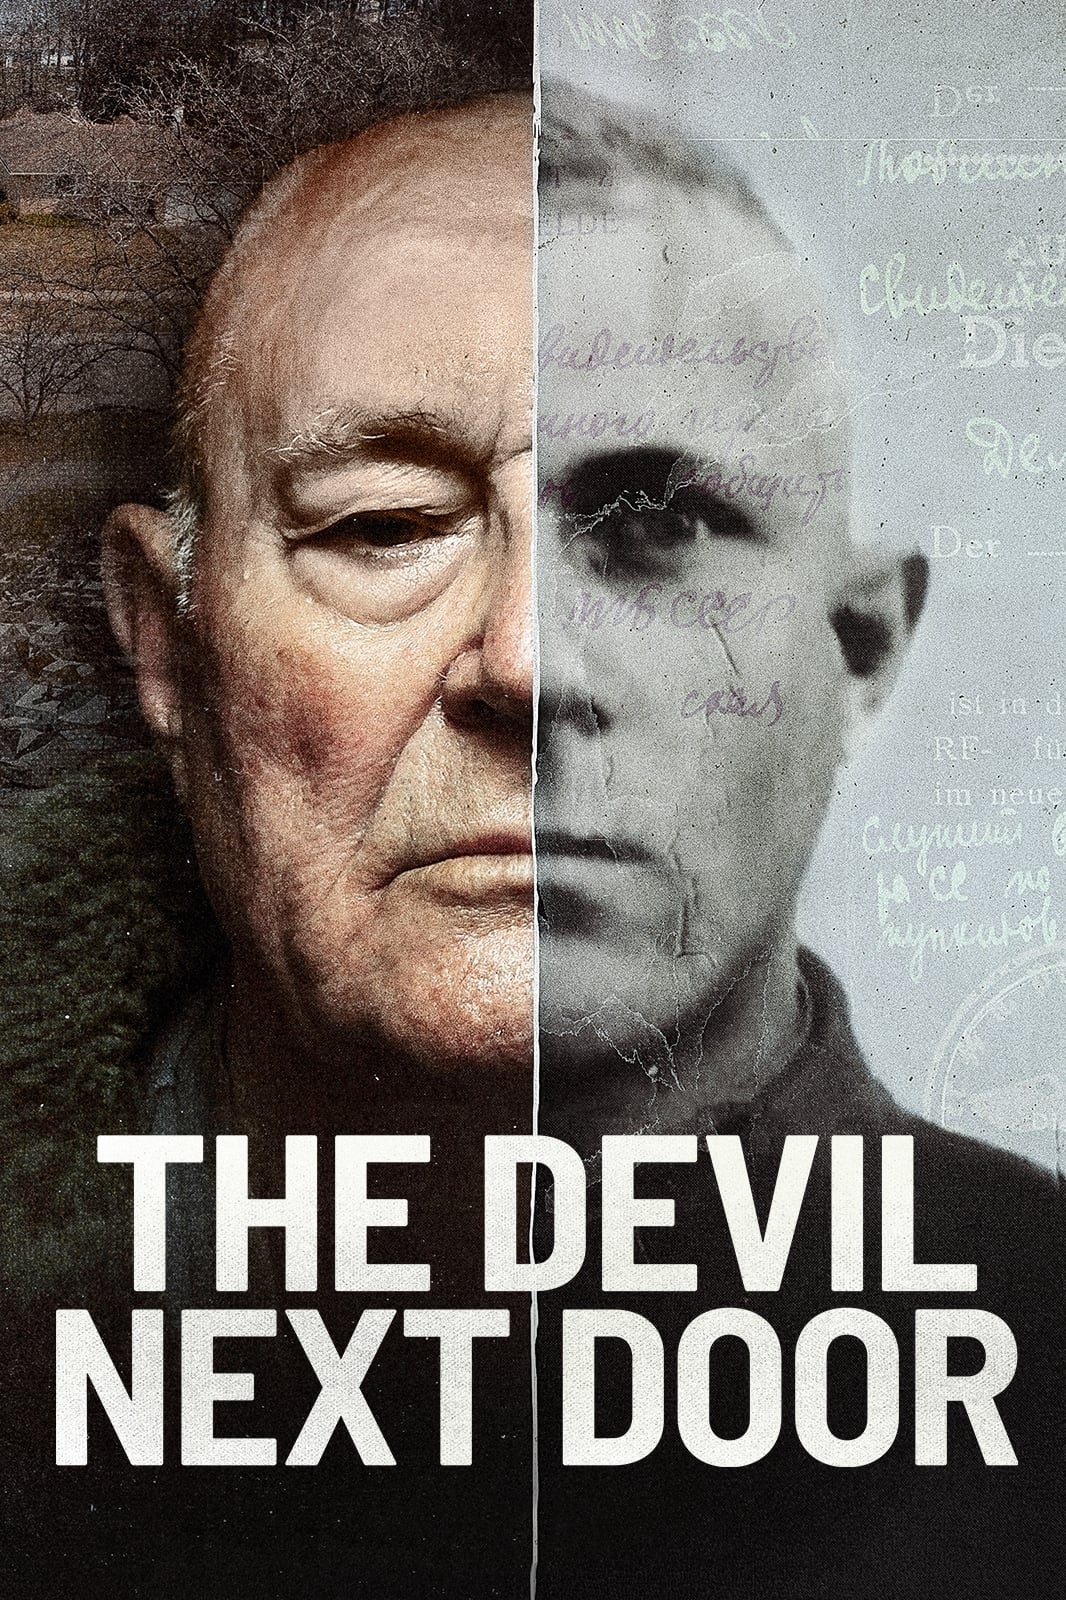 Plakát pro film “Ďábel od vedle”